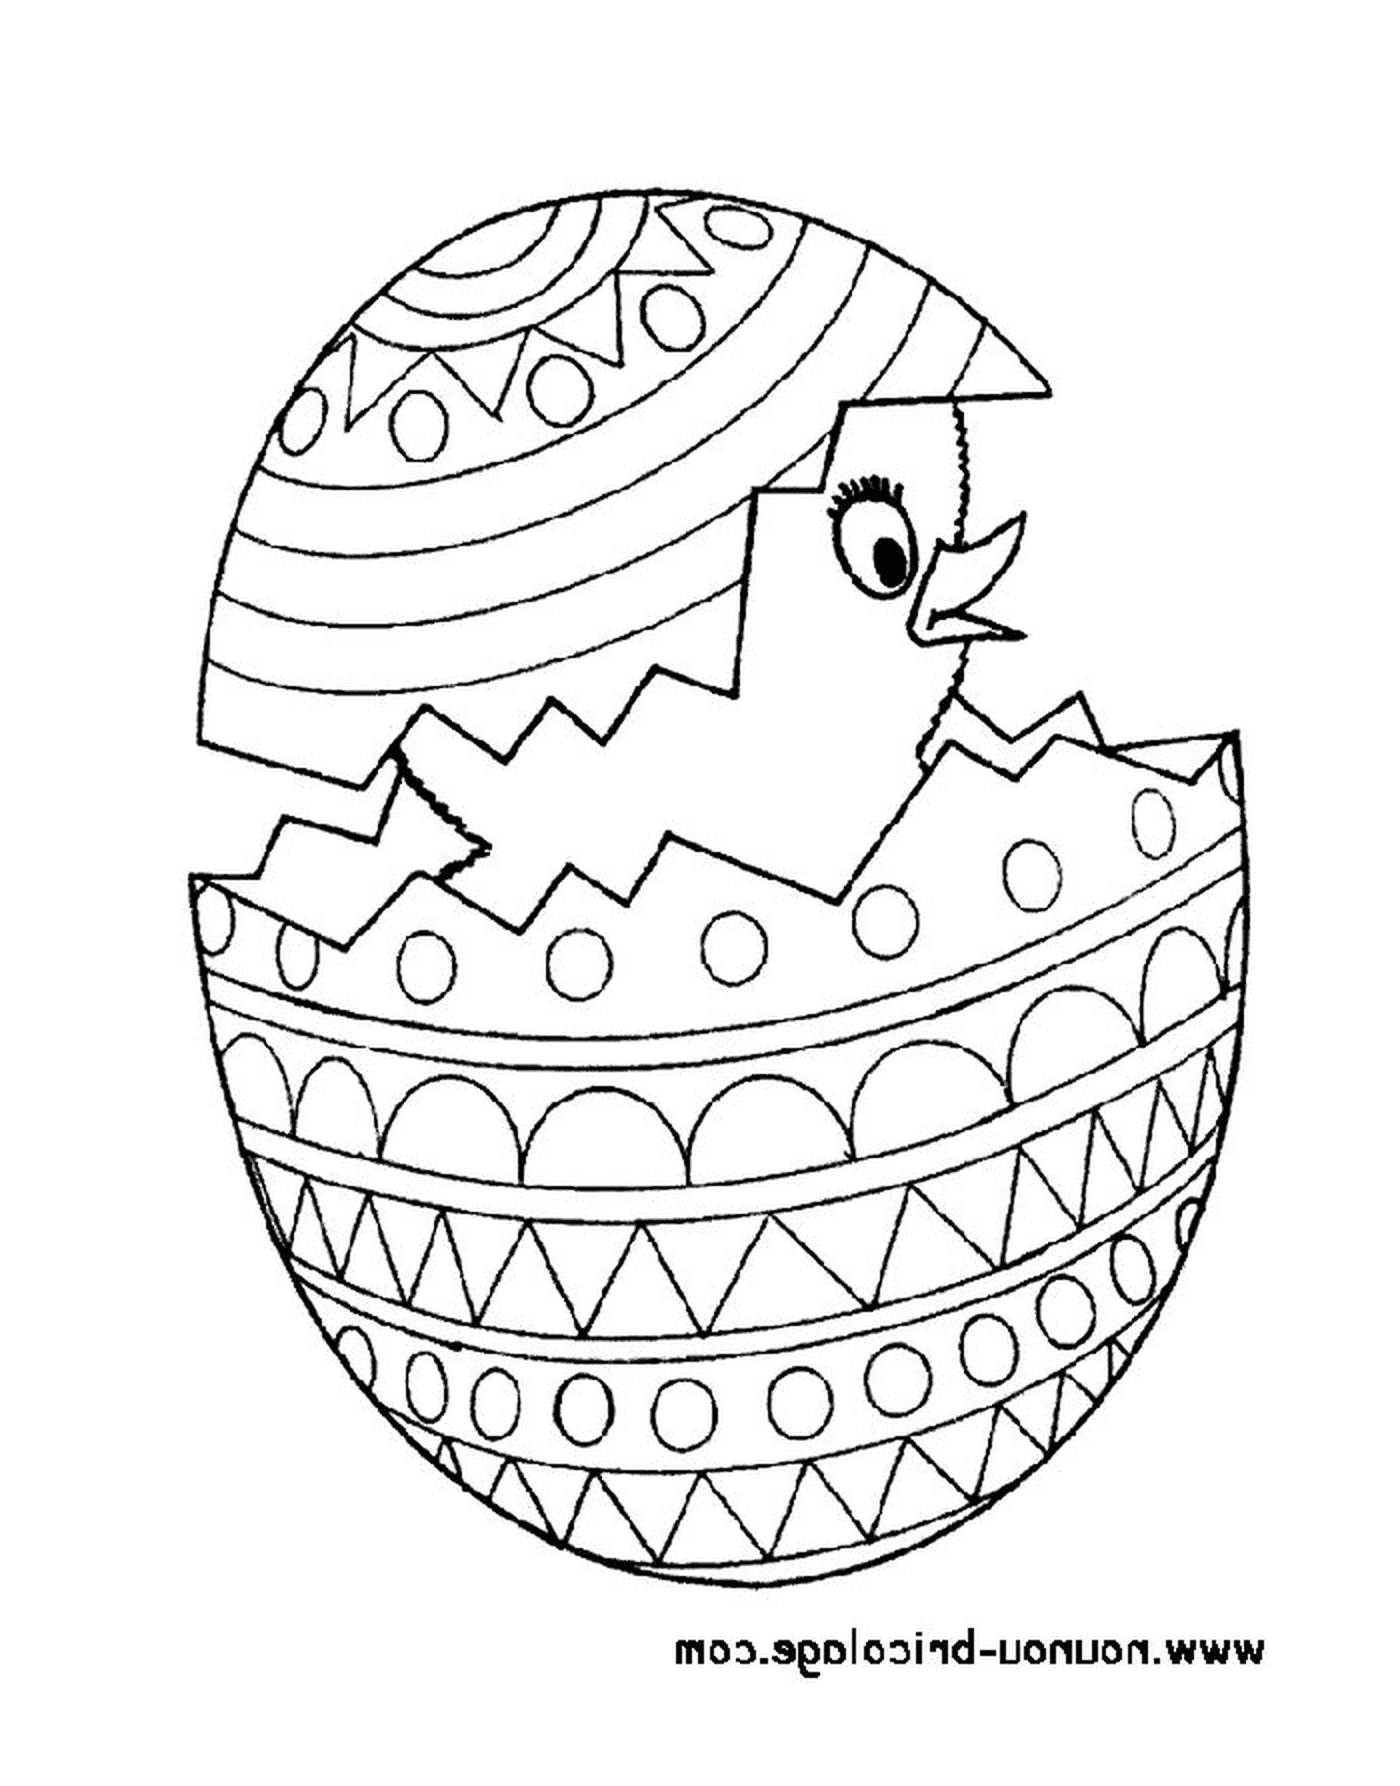  Pasqua 48, un uovo di Pasqua con una pulcino dentro 